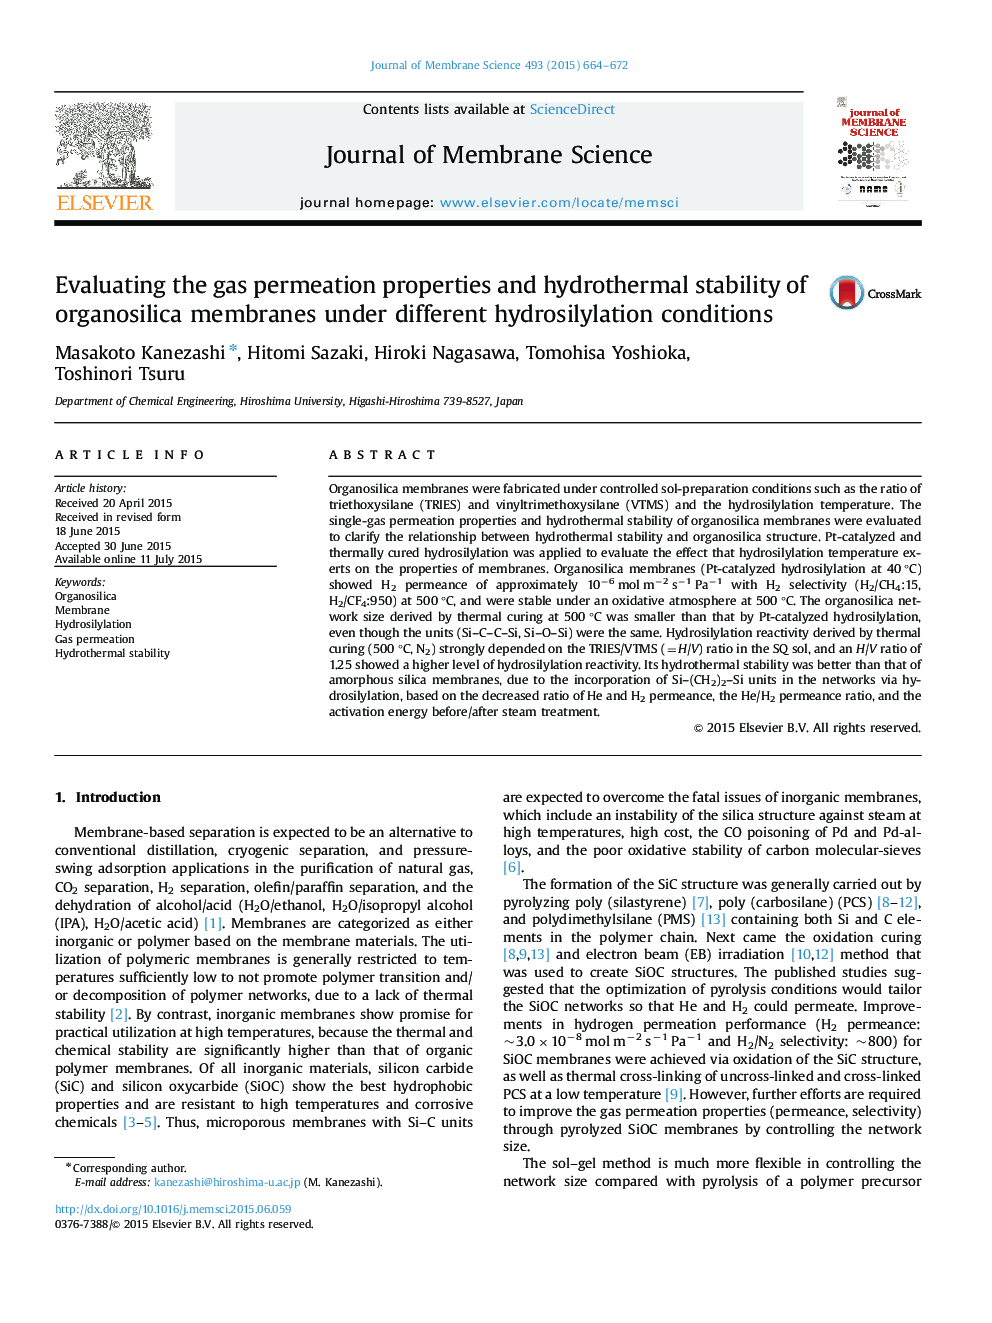 ارزیابی خواص نفوذ گاز و پایداری هیدروترمال از غشاهای ارگانوسیلیکا تحت شرایط مختلف هیدروسیلیلاسیون 